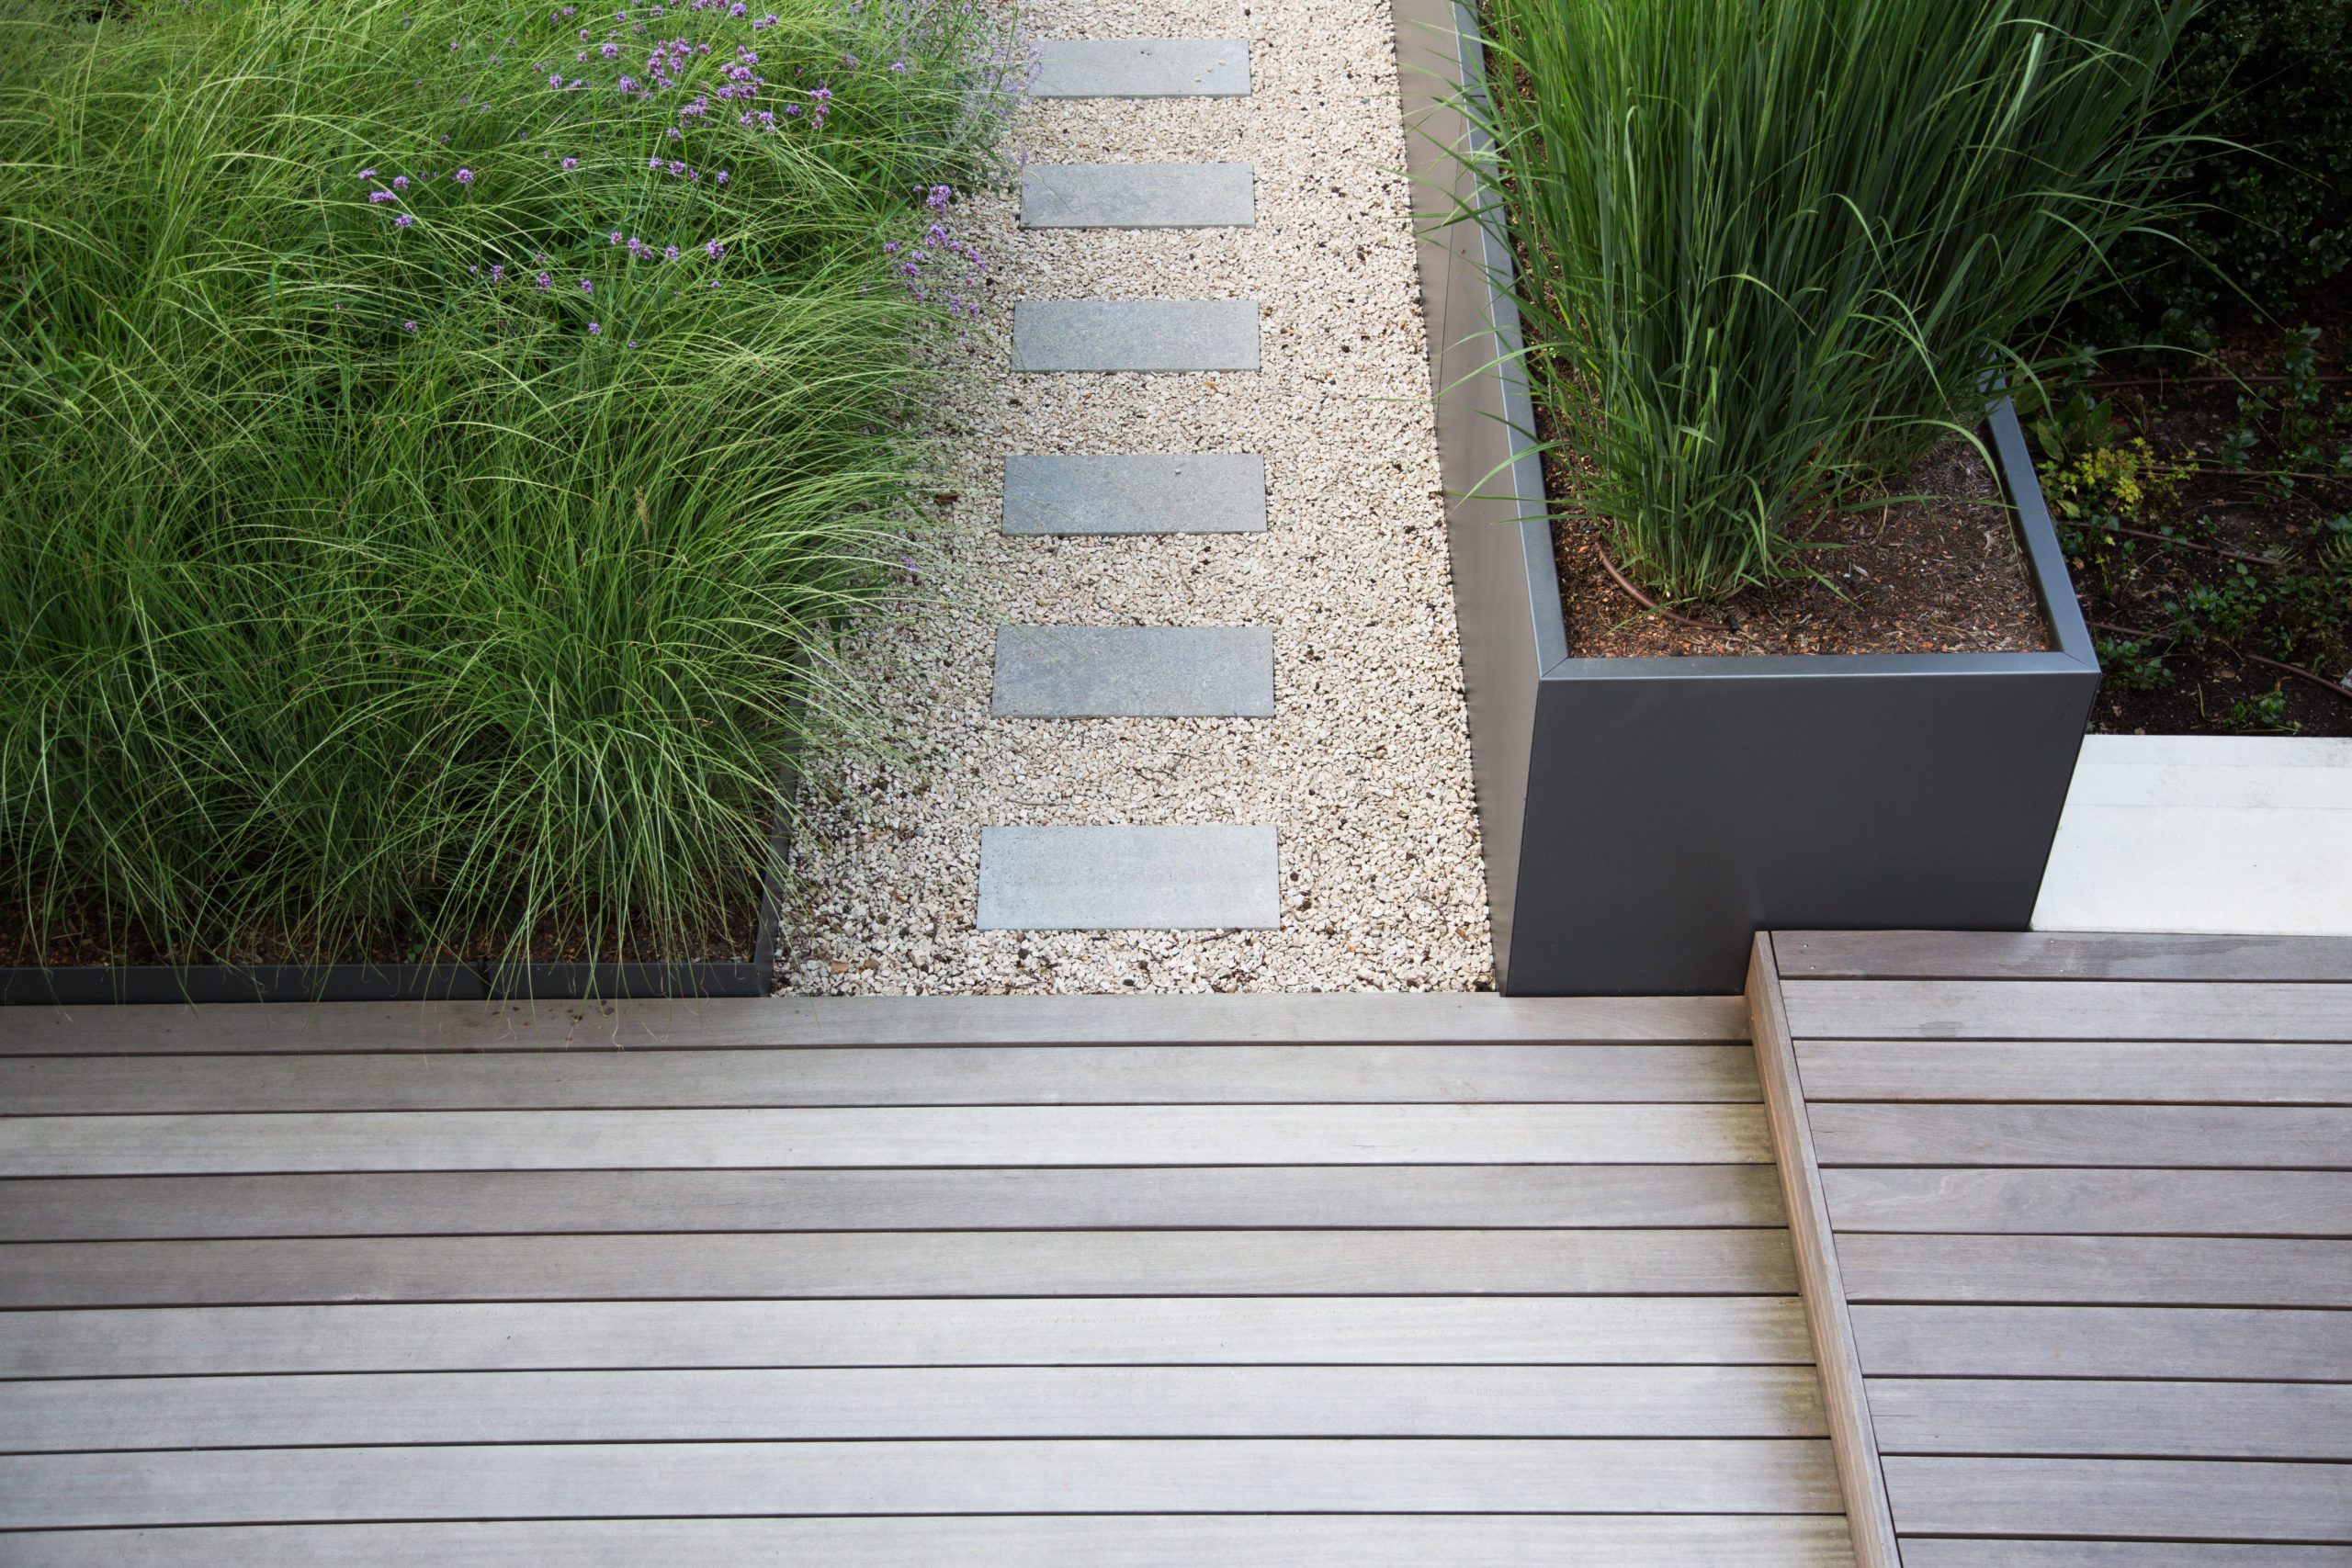 Moderne Garten- und Terrassengestaltung im Materialmix: Terrassen aus Holz und Gehweg aus Steinplatten umgeben von Schotter und Metall Pflanzgefäßen mit Grünpflanzen